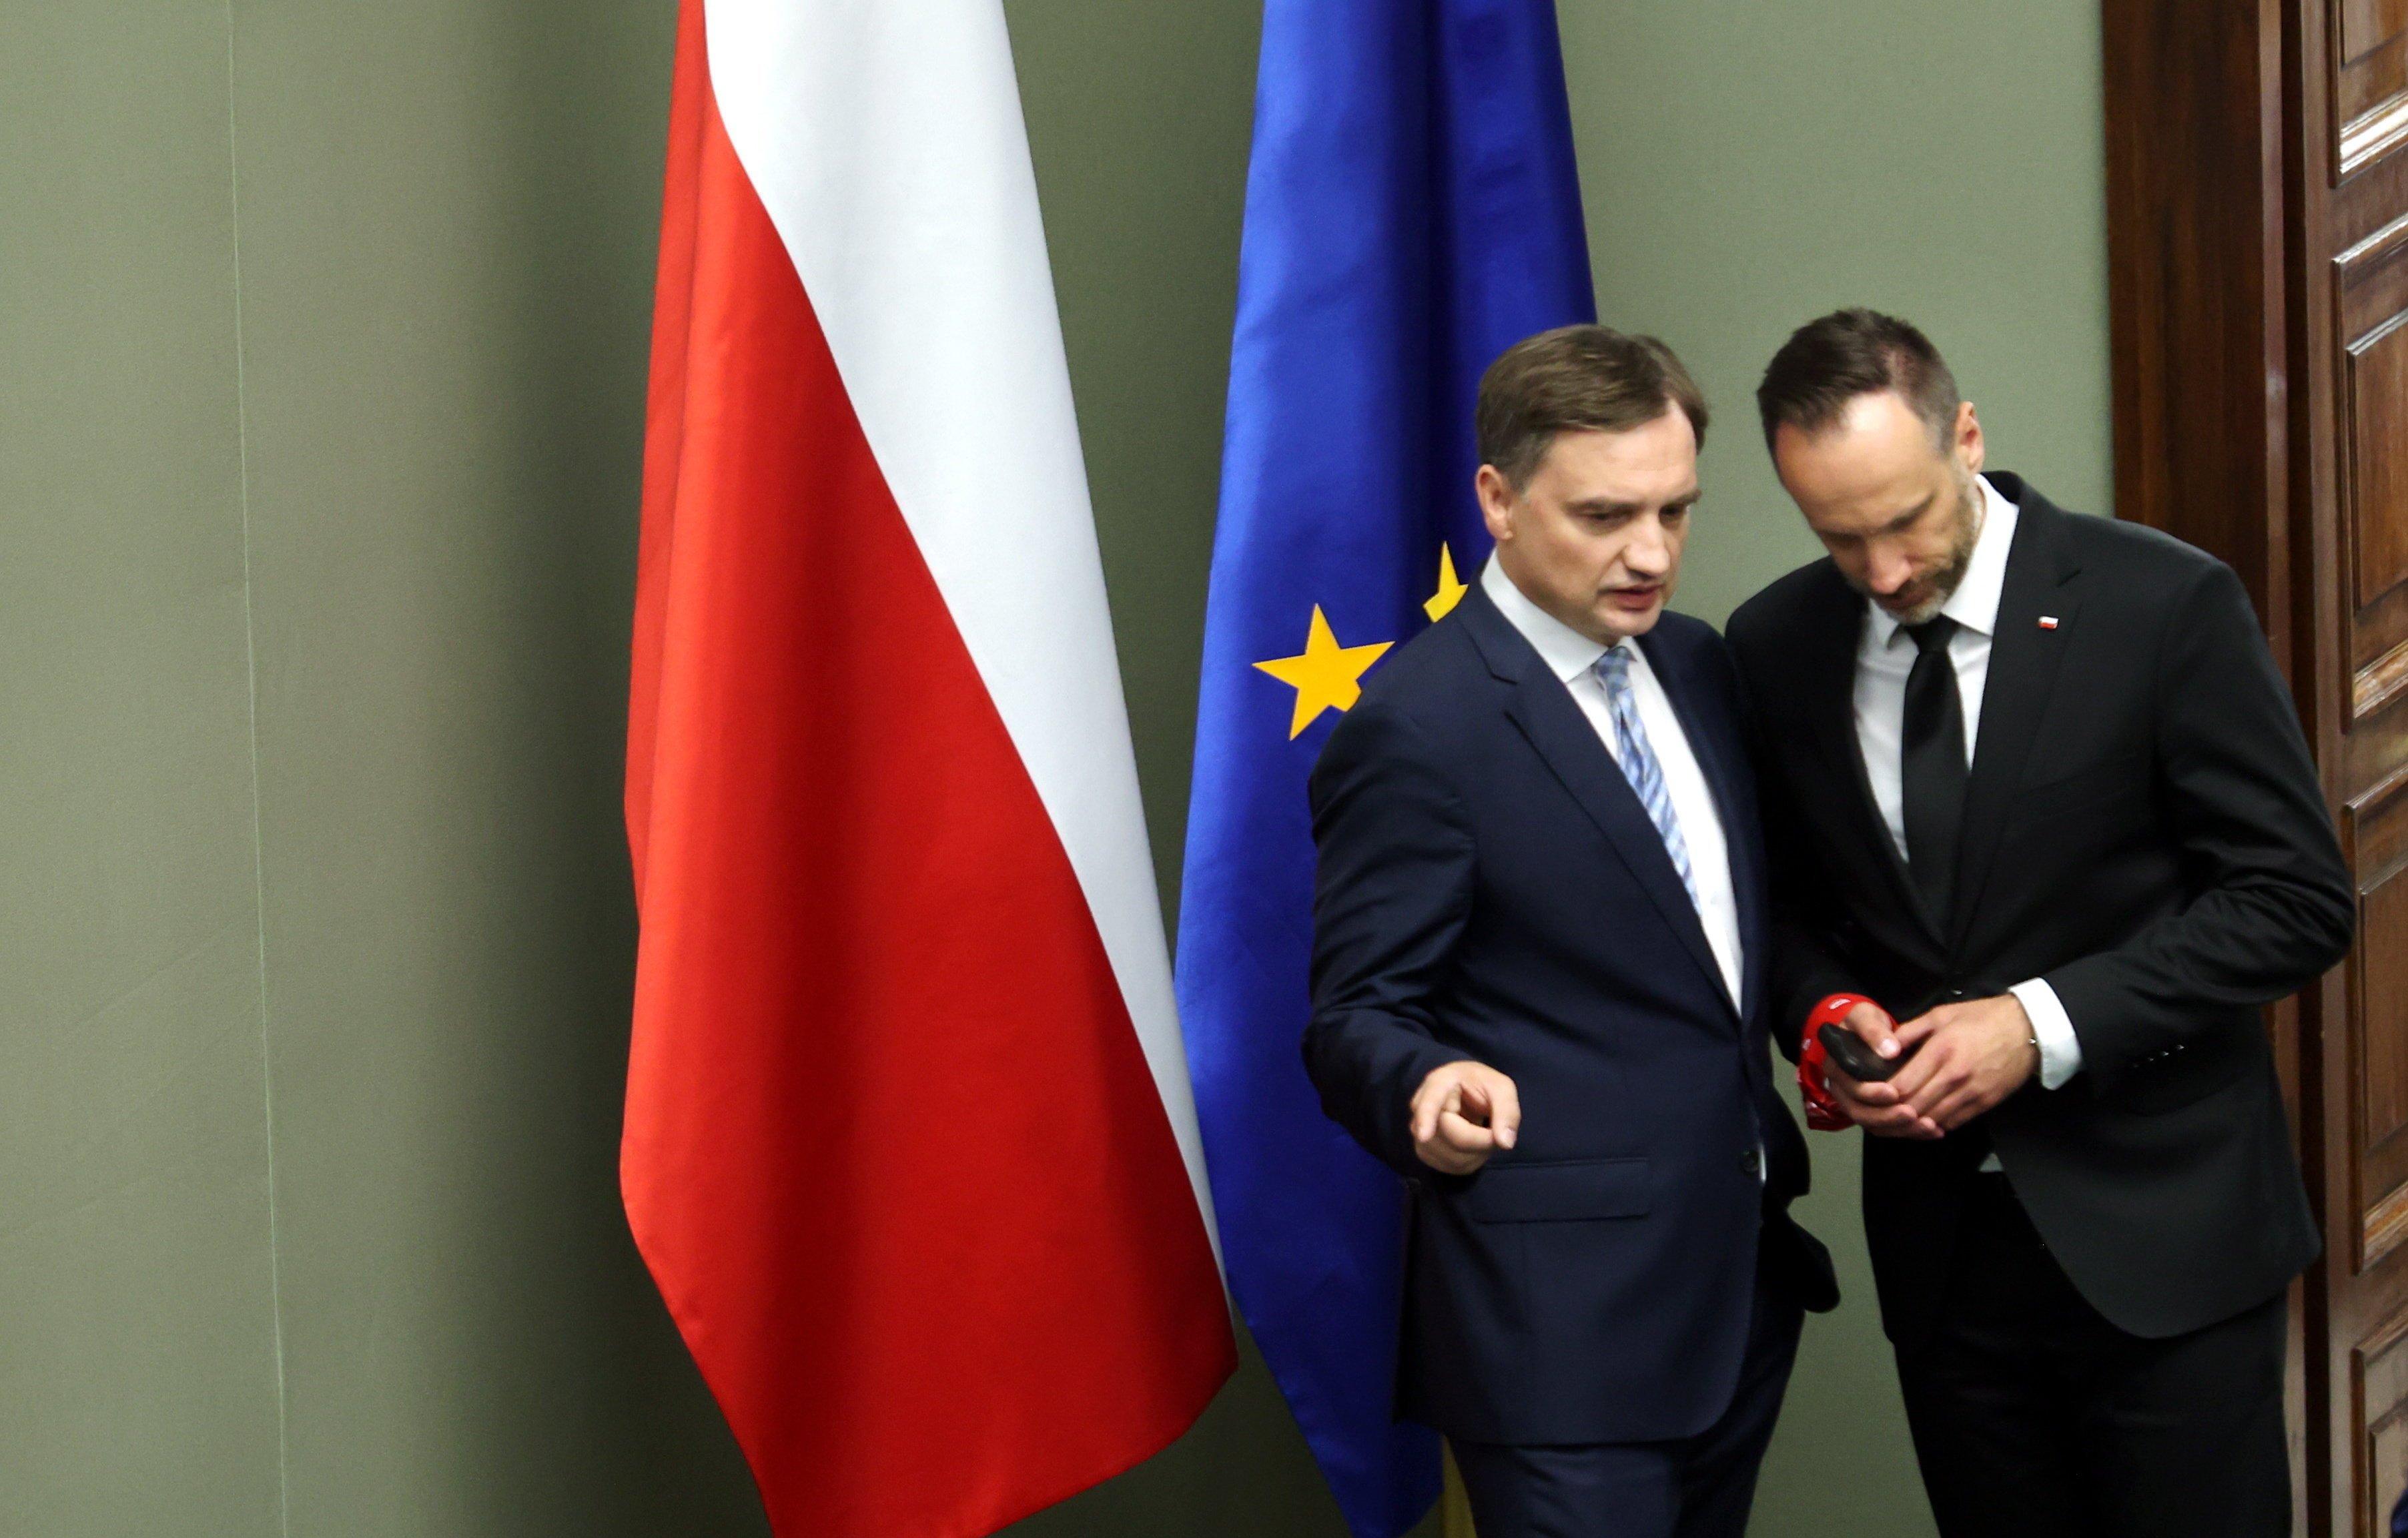 Dwaj mężczyźni w garniturach, Zbigniew Ziobro i Janusz Kowalski stoją w Sejmie na tle flag Polski i Unii Europejskiej